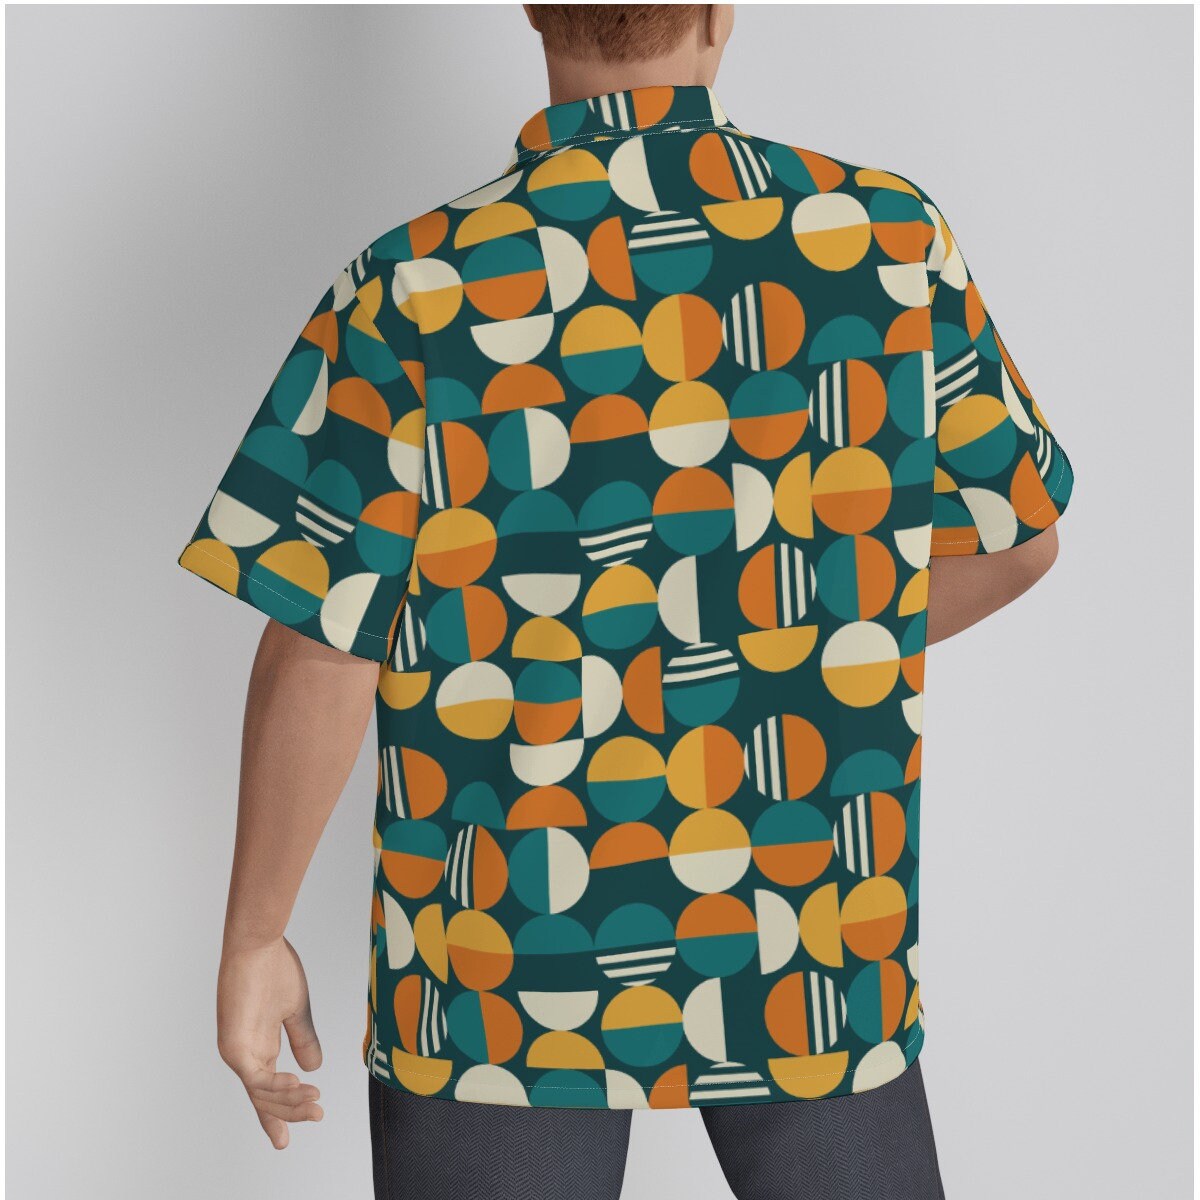 Chemise rétro hommes, haut rétro, chemise mod, chemise géométrique, chemise sarcelle orange, haut de style vintage, chemise hawaïenne inspirée des années 60, chemise habillée